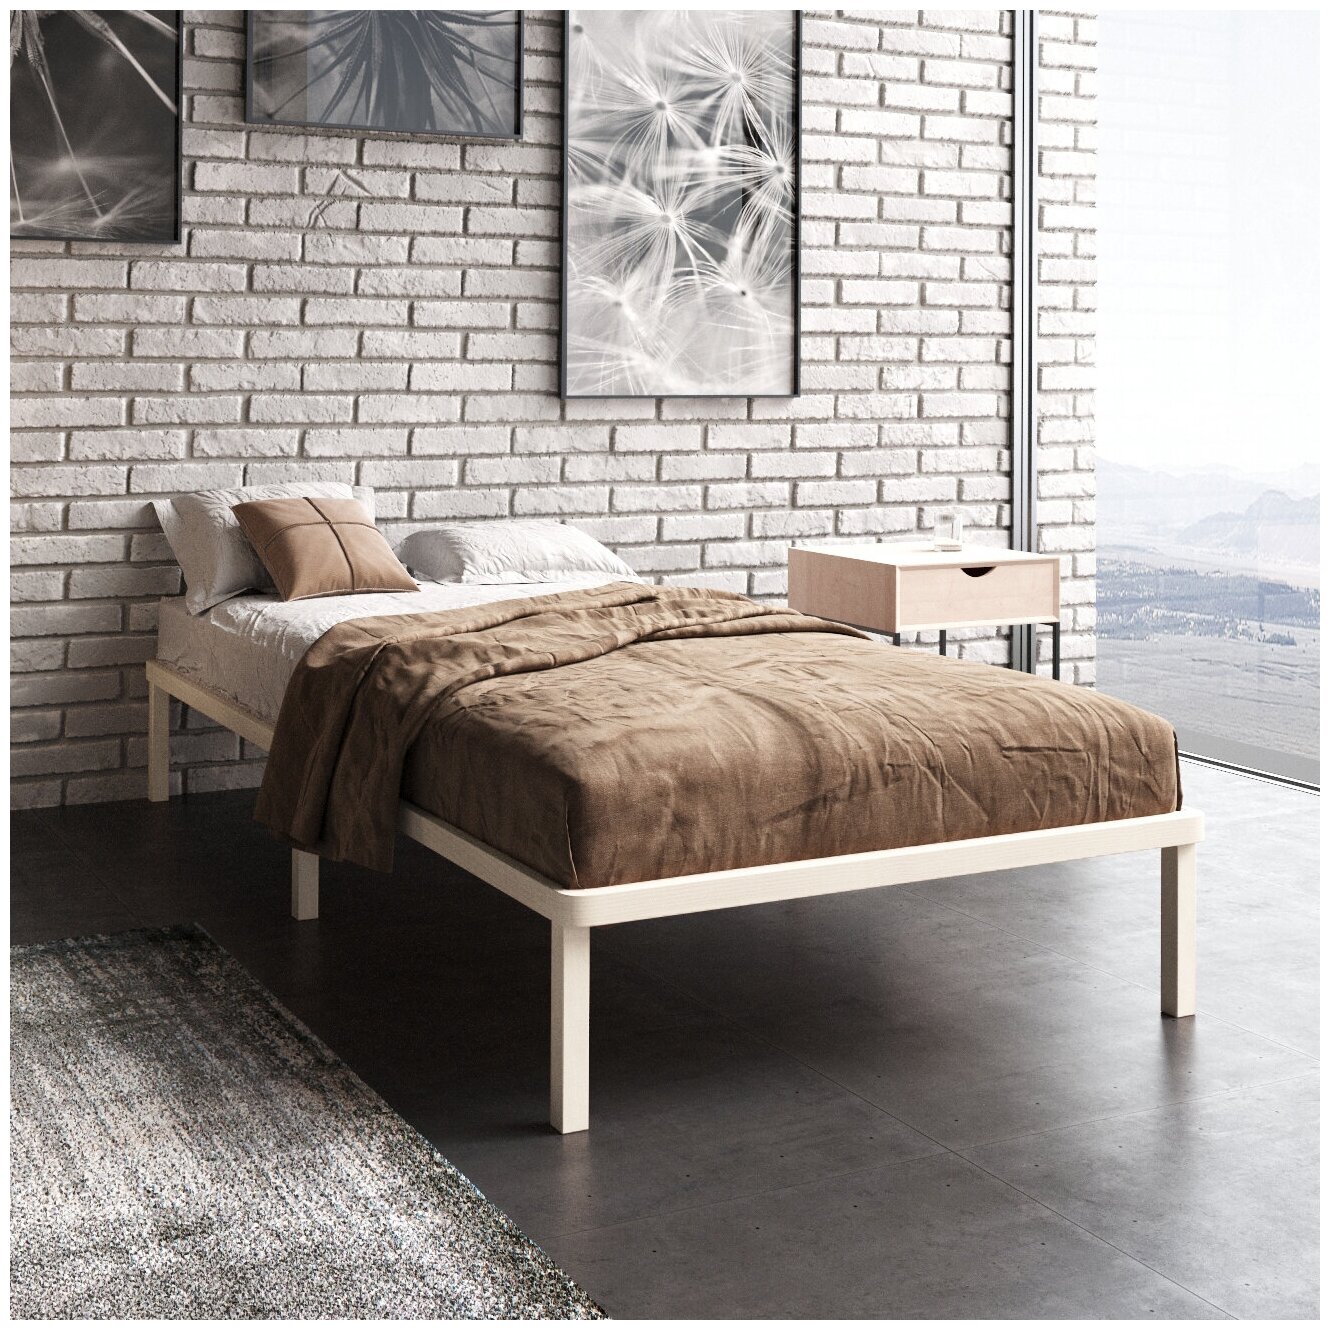 Кровать односпальная, 120х200 см, Hansales, Light Sleep, деревянная, из массива березы